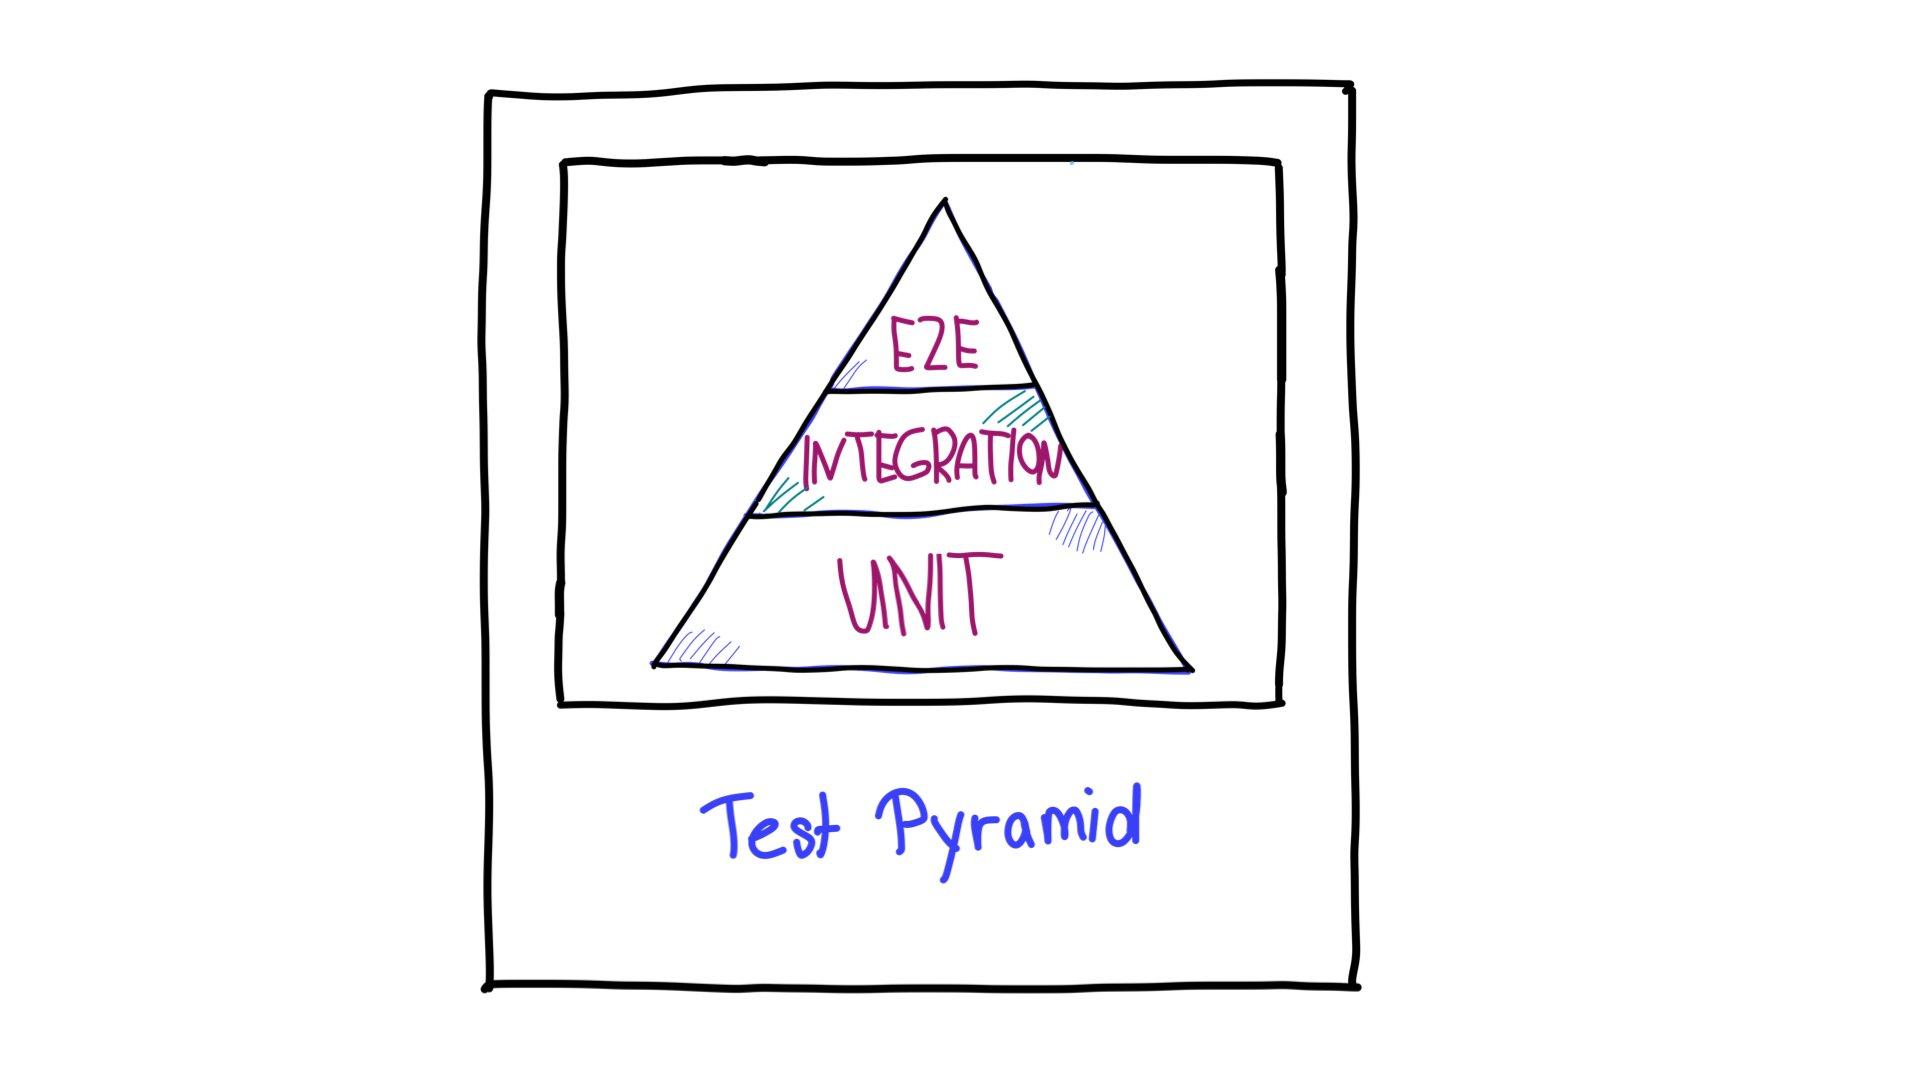 테스트 피라미드는 상단에 엔드 투 엔드 (E2E) 테스트, 중간에 통합 테스트, 하단에 단위 테스트가 있습니다.